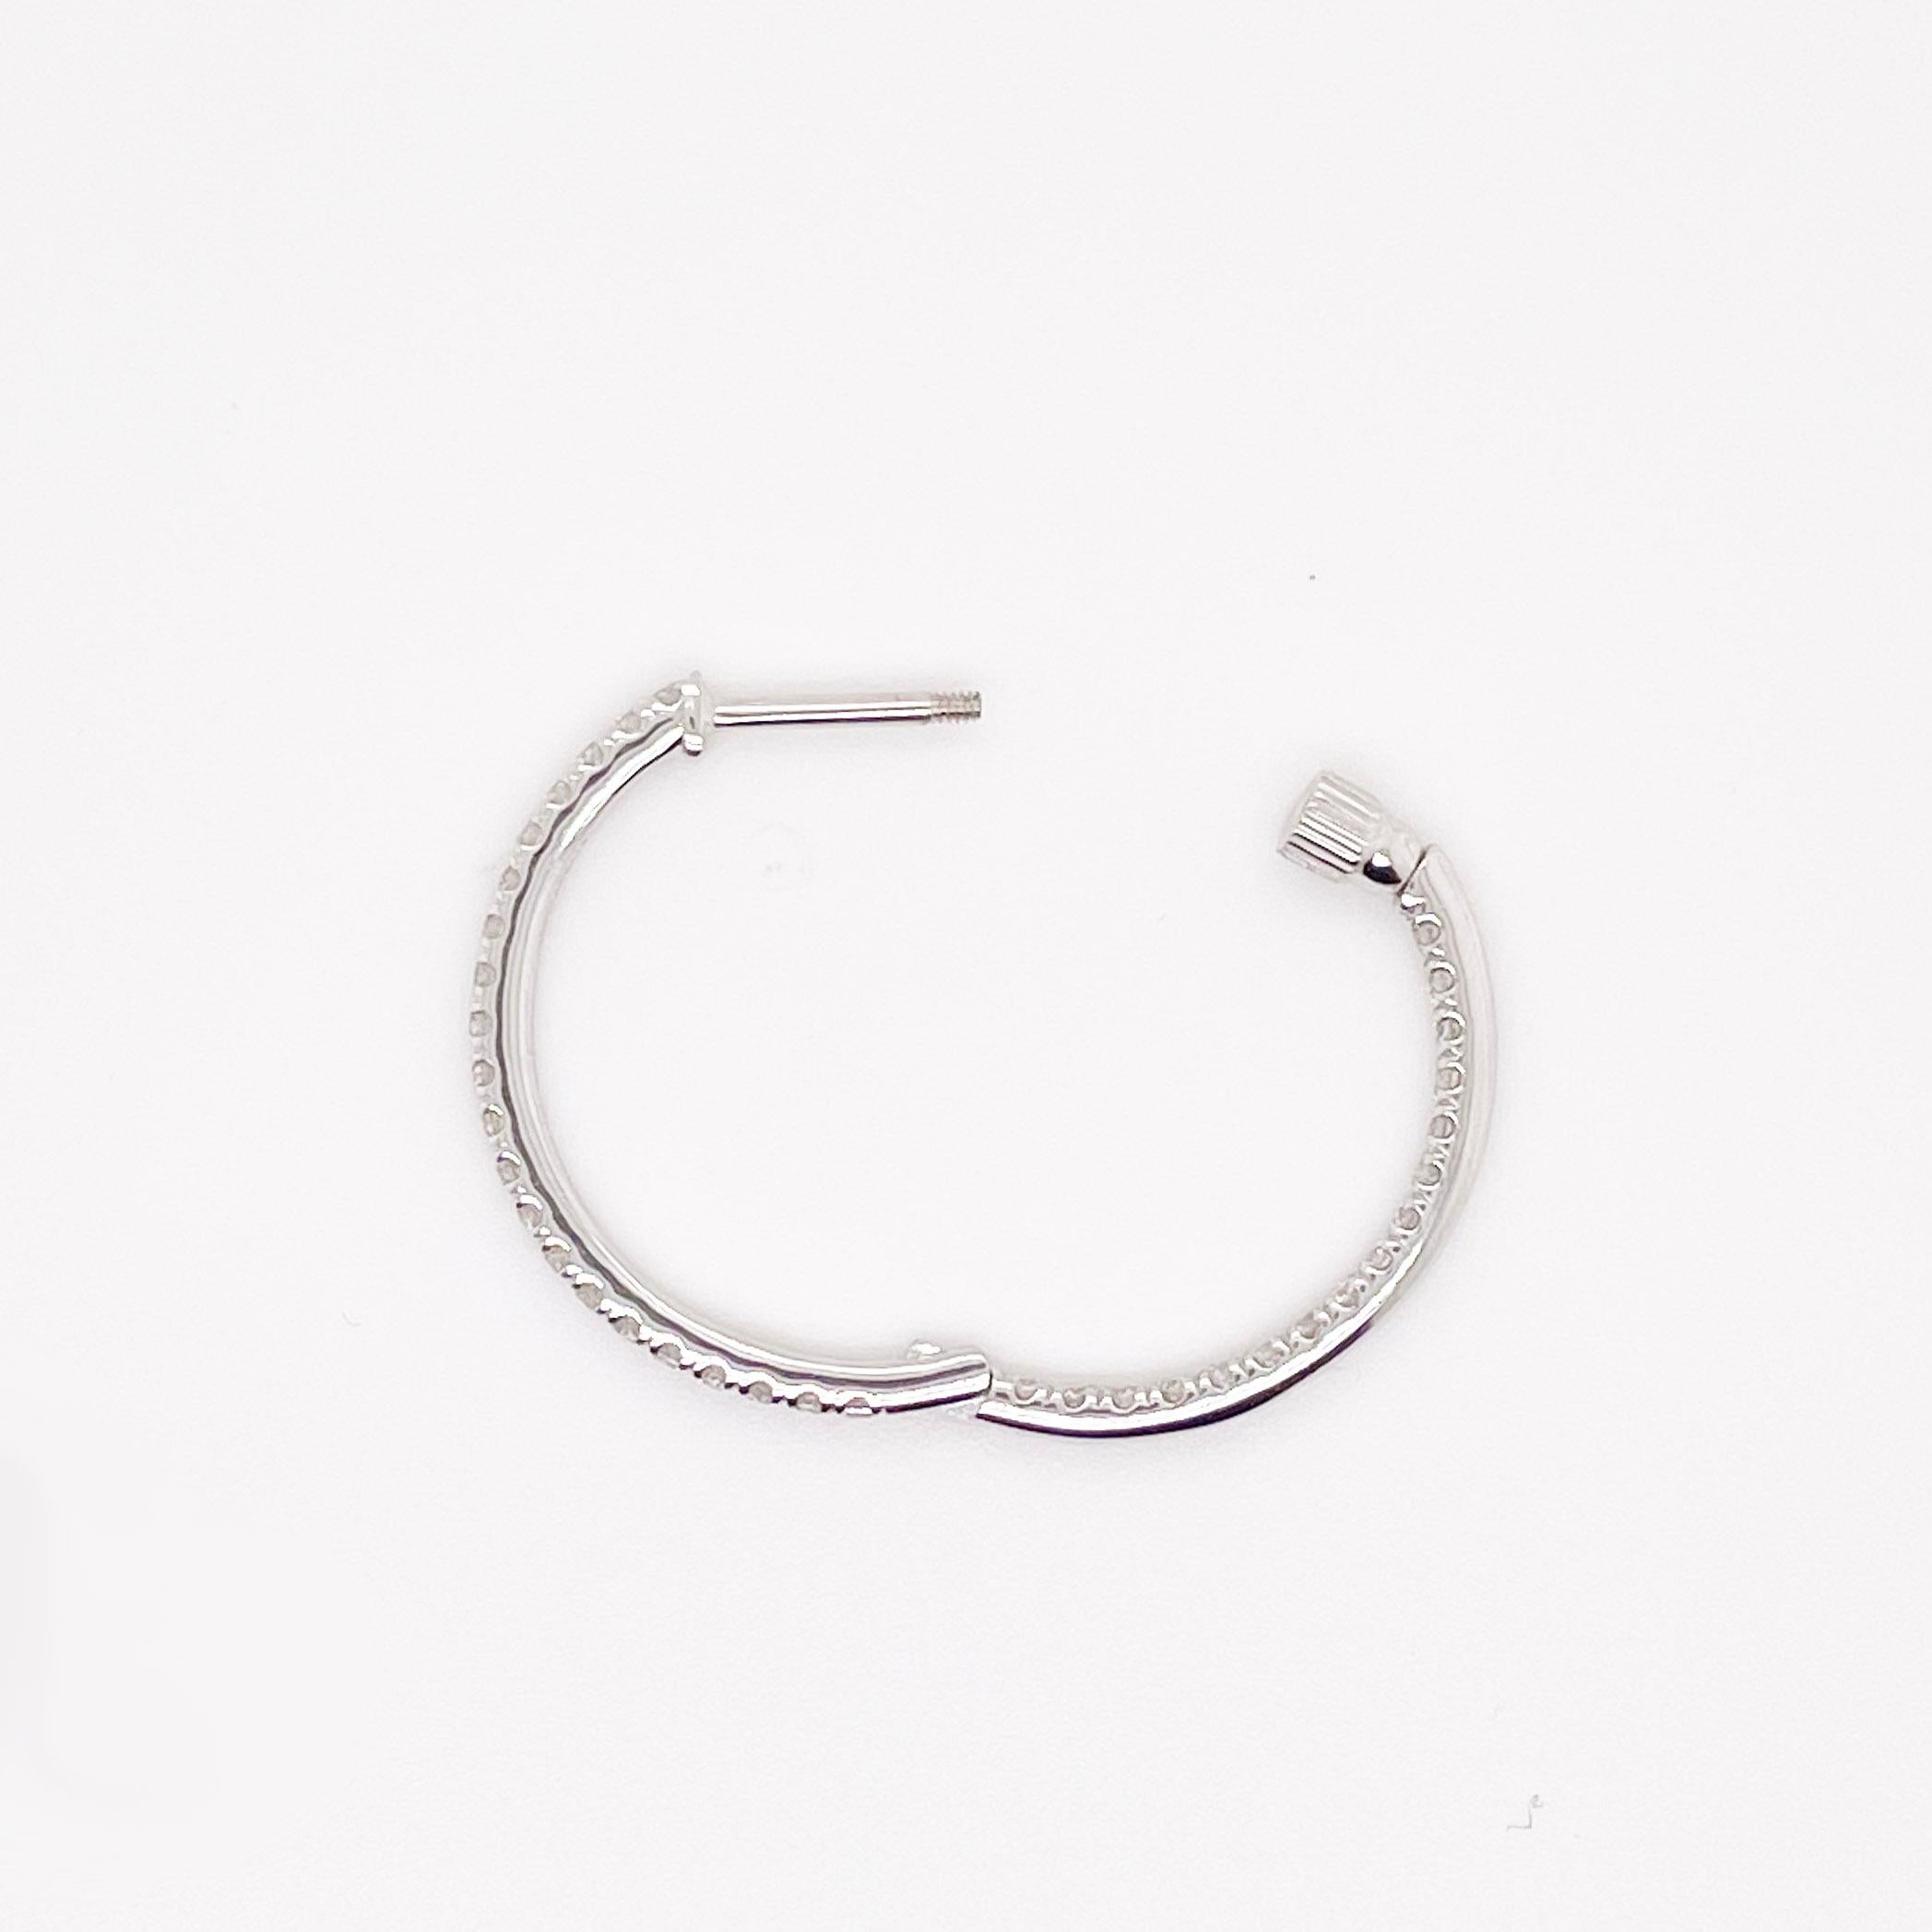 how to secure hoop earrings